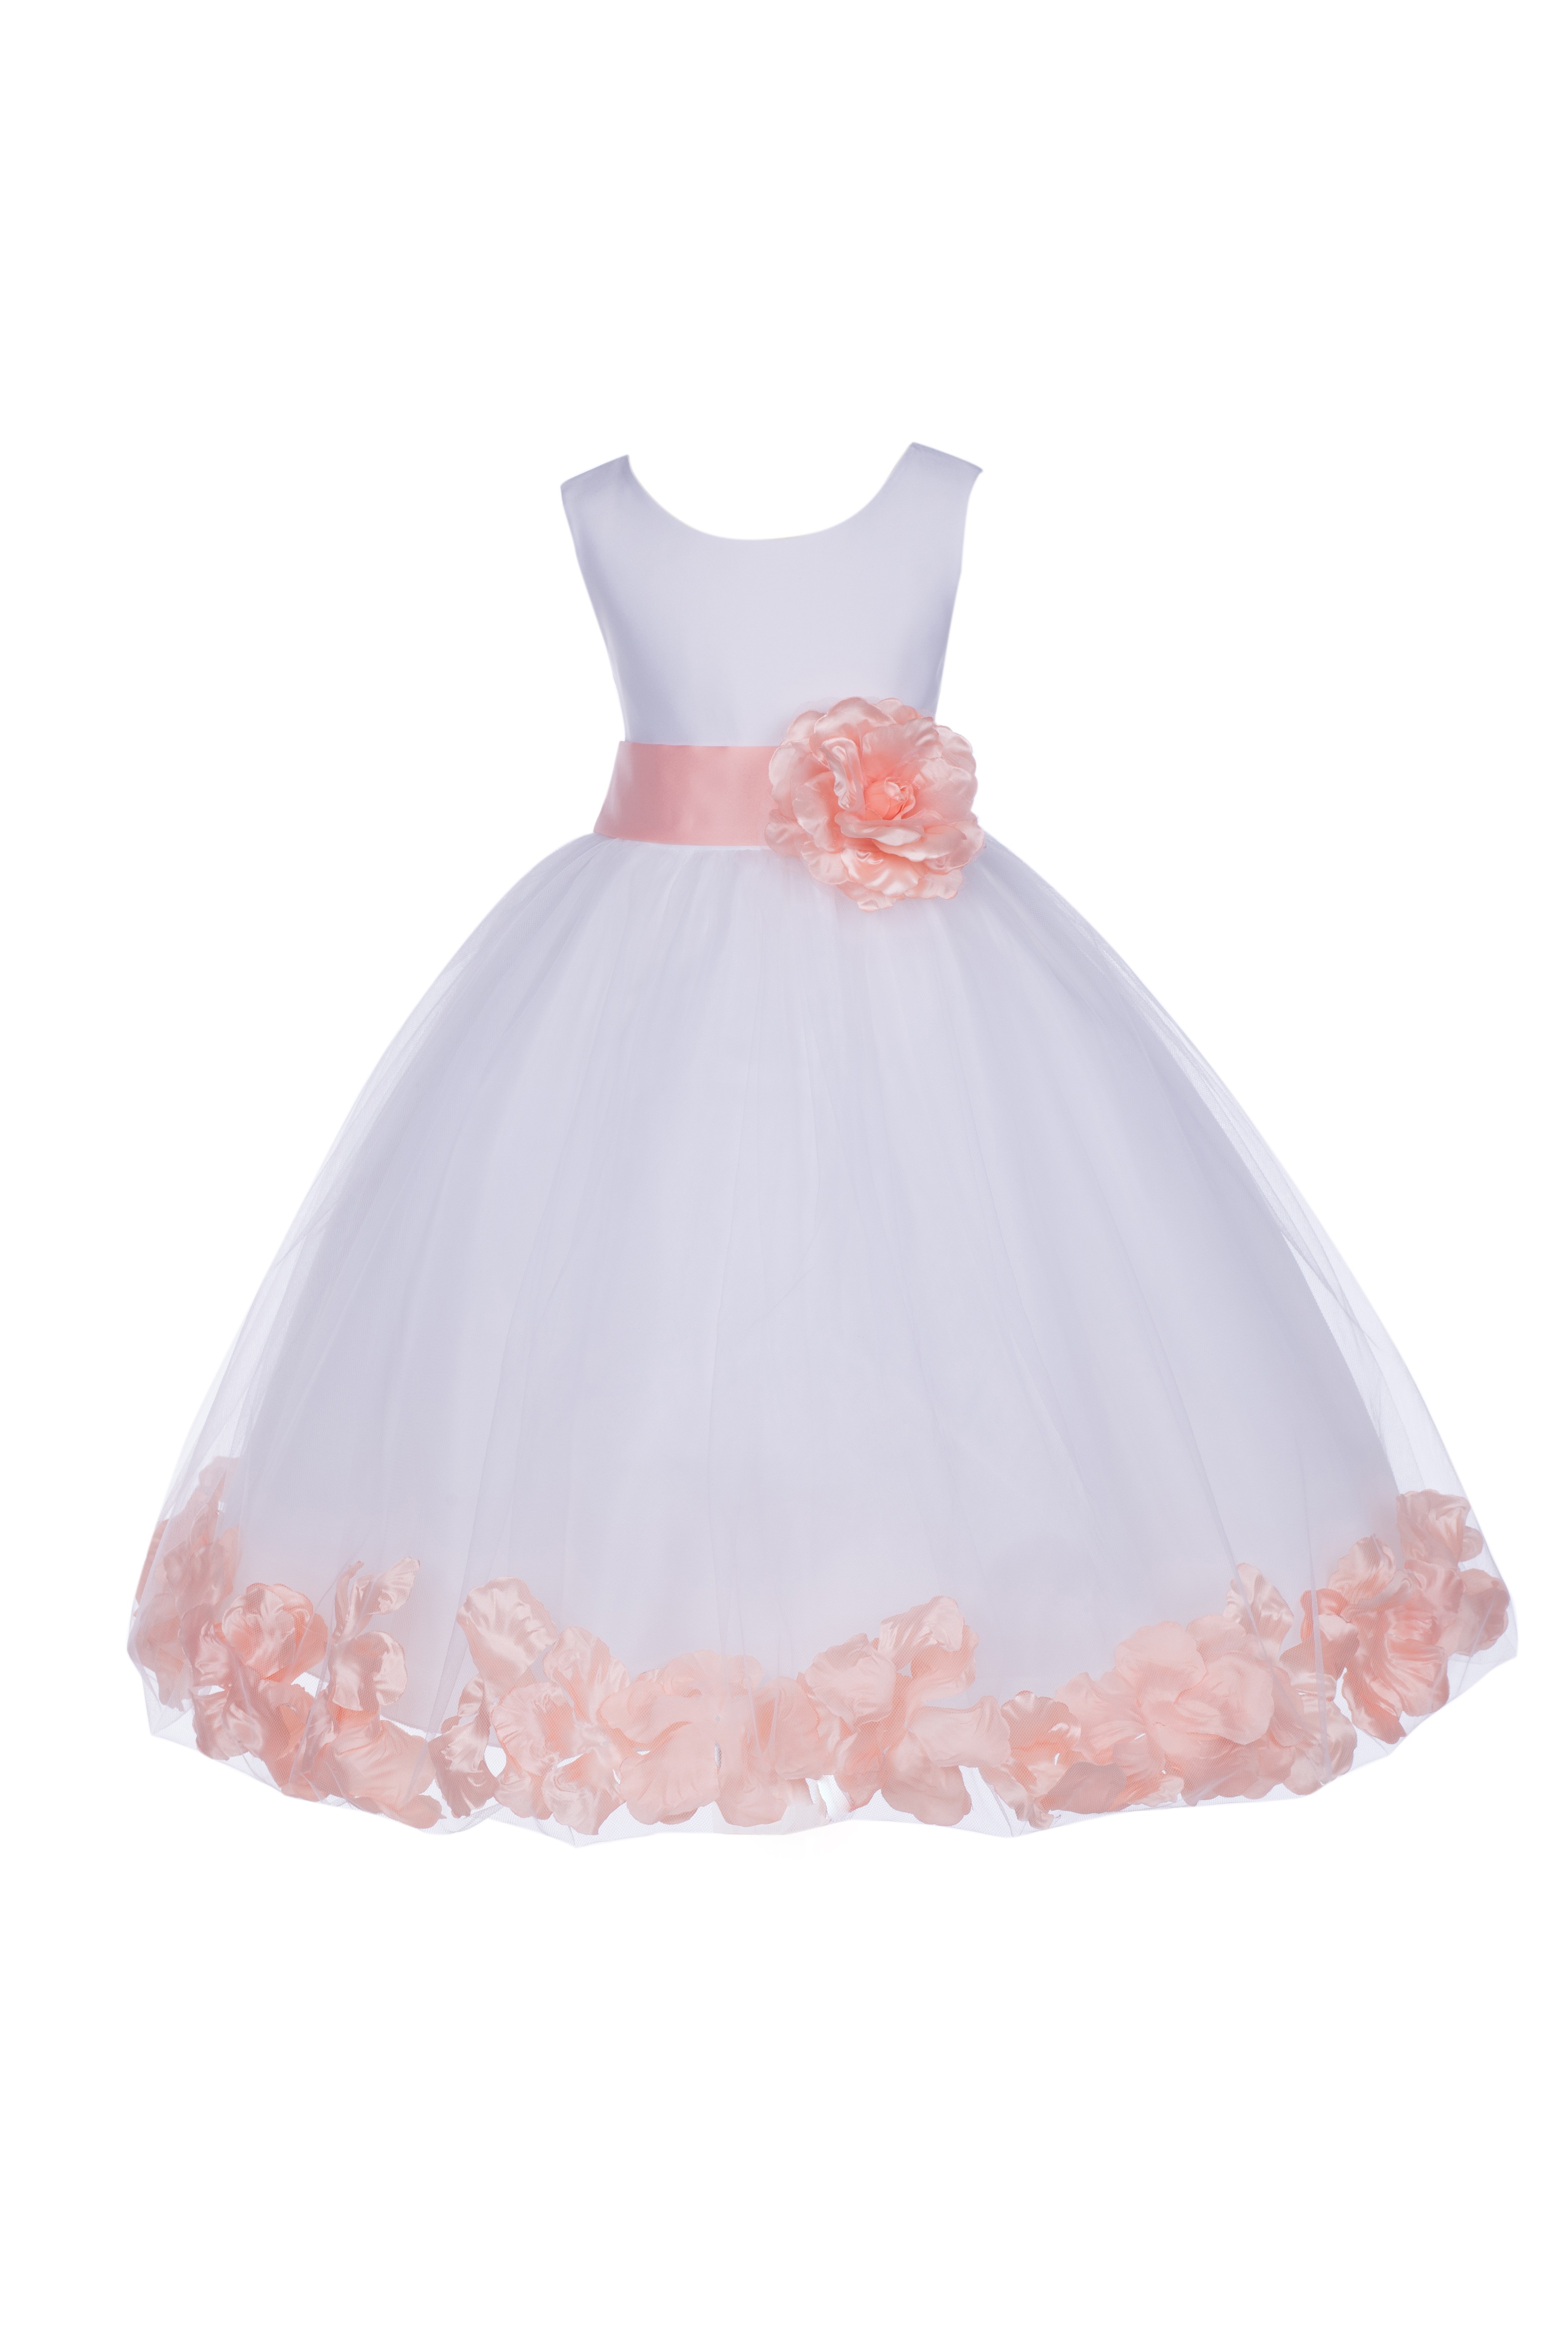 White/Peach Tulle Rose Petals Flower Girl Dress Wedding 302T